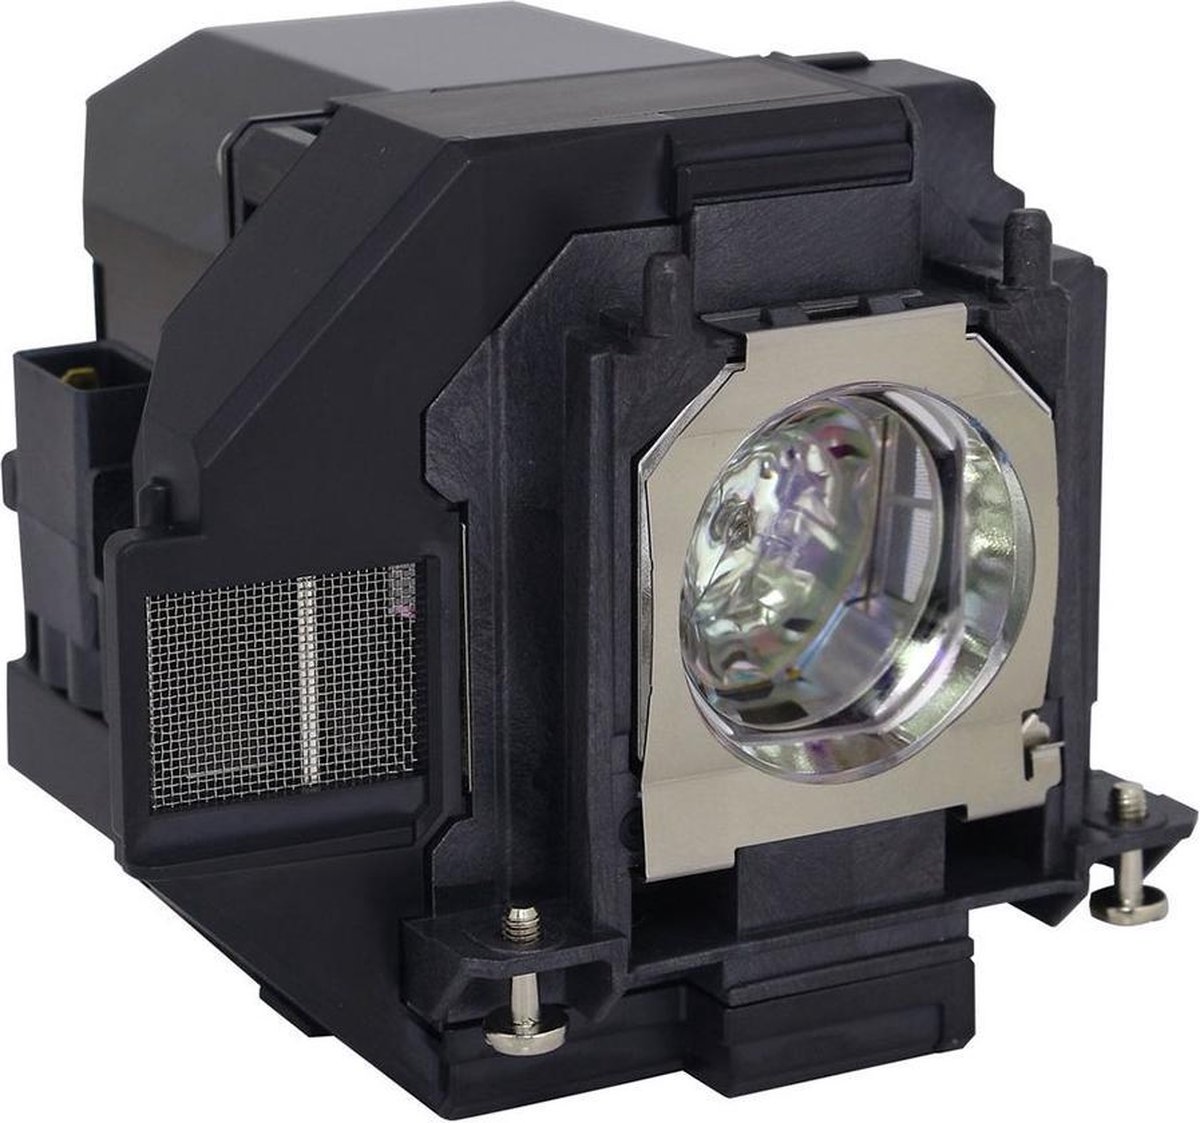 Beamerlamp geschikt voor de EPSON H854B beamer, lamp code LP96 / V13H010L96. Bevat originele UHP lamp, prestaties gelijk aan origineel.